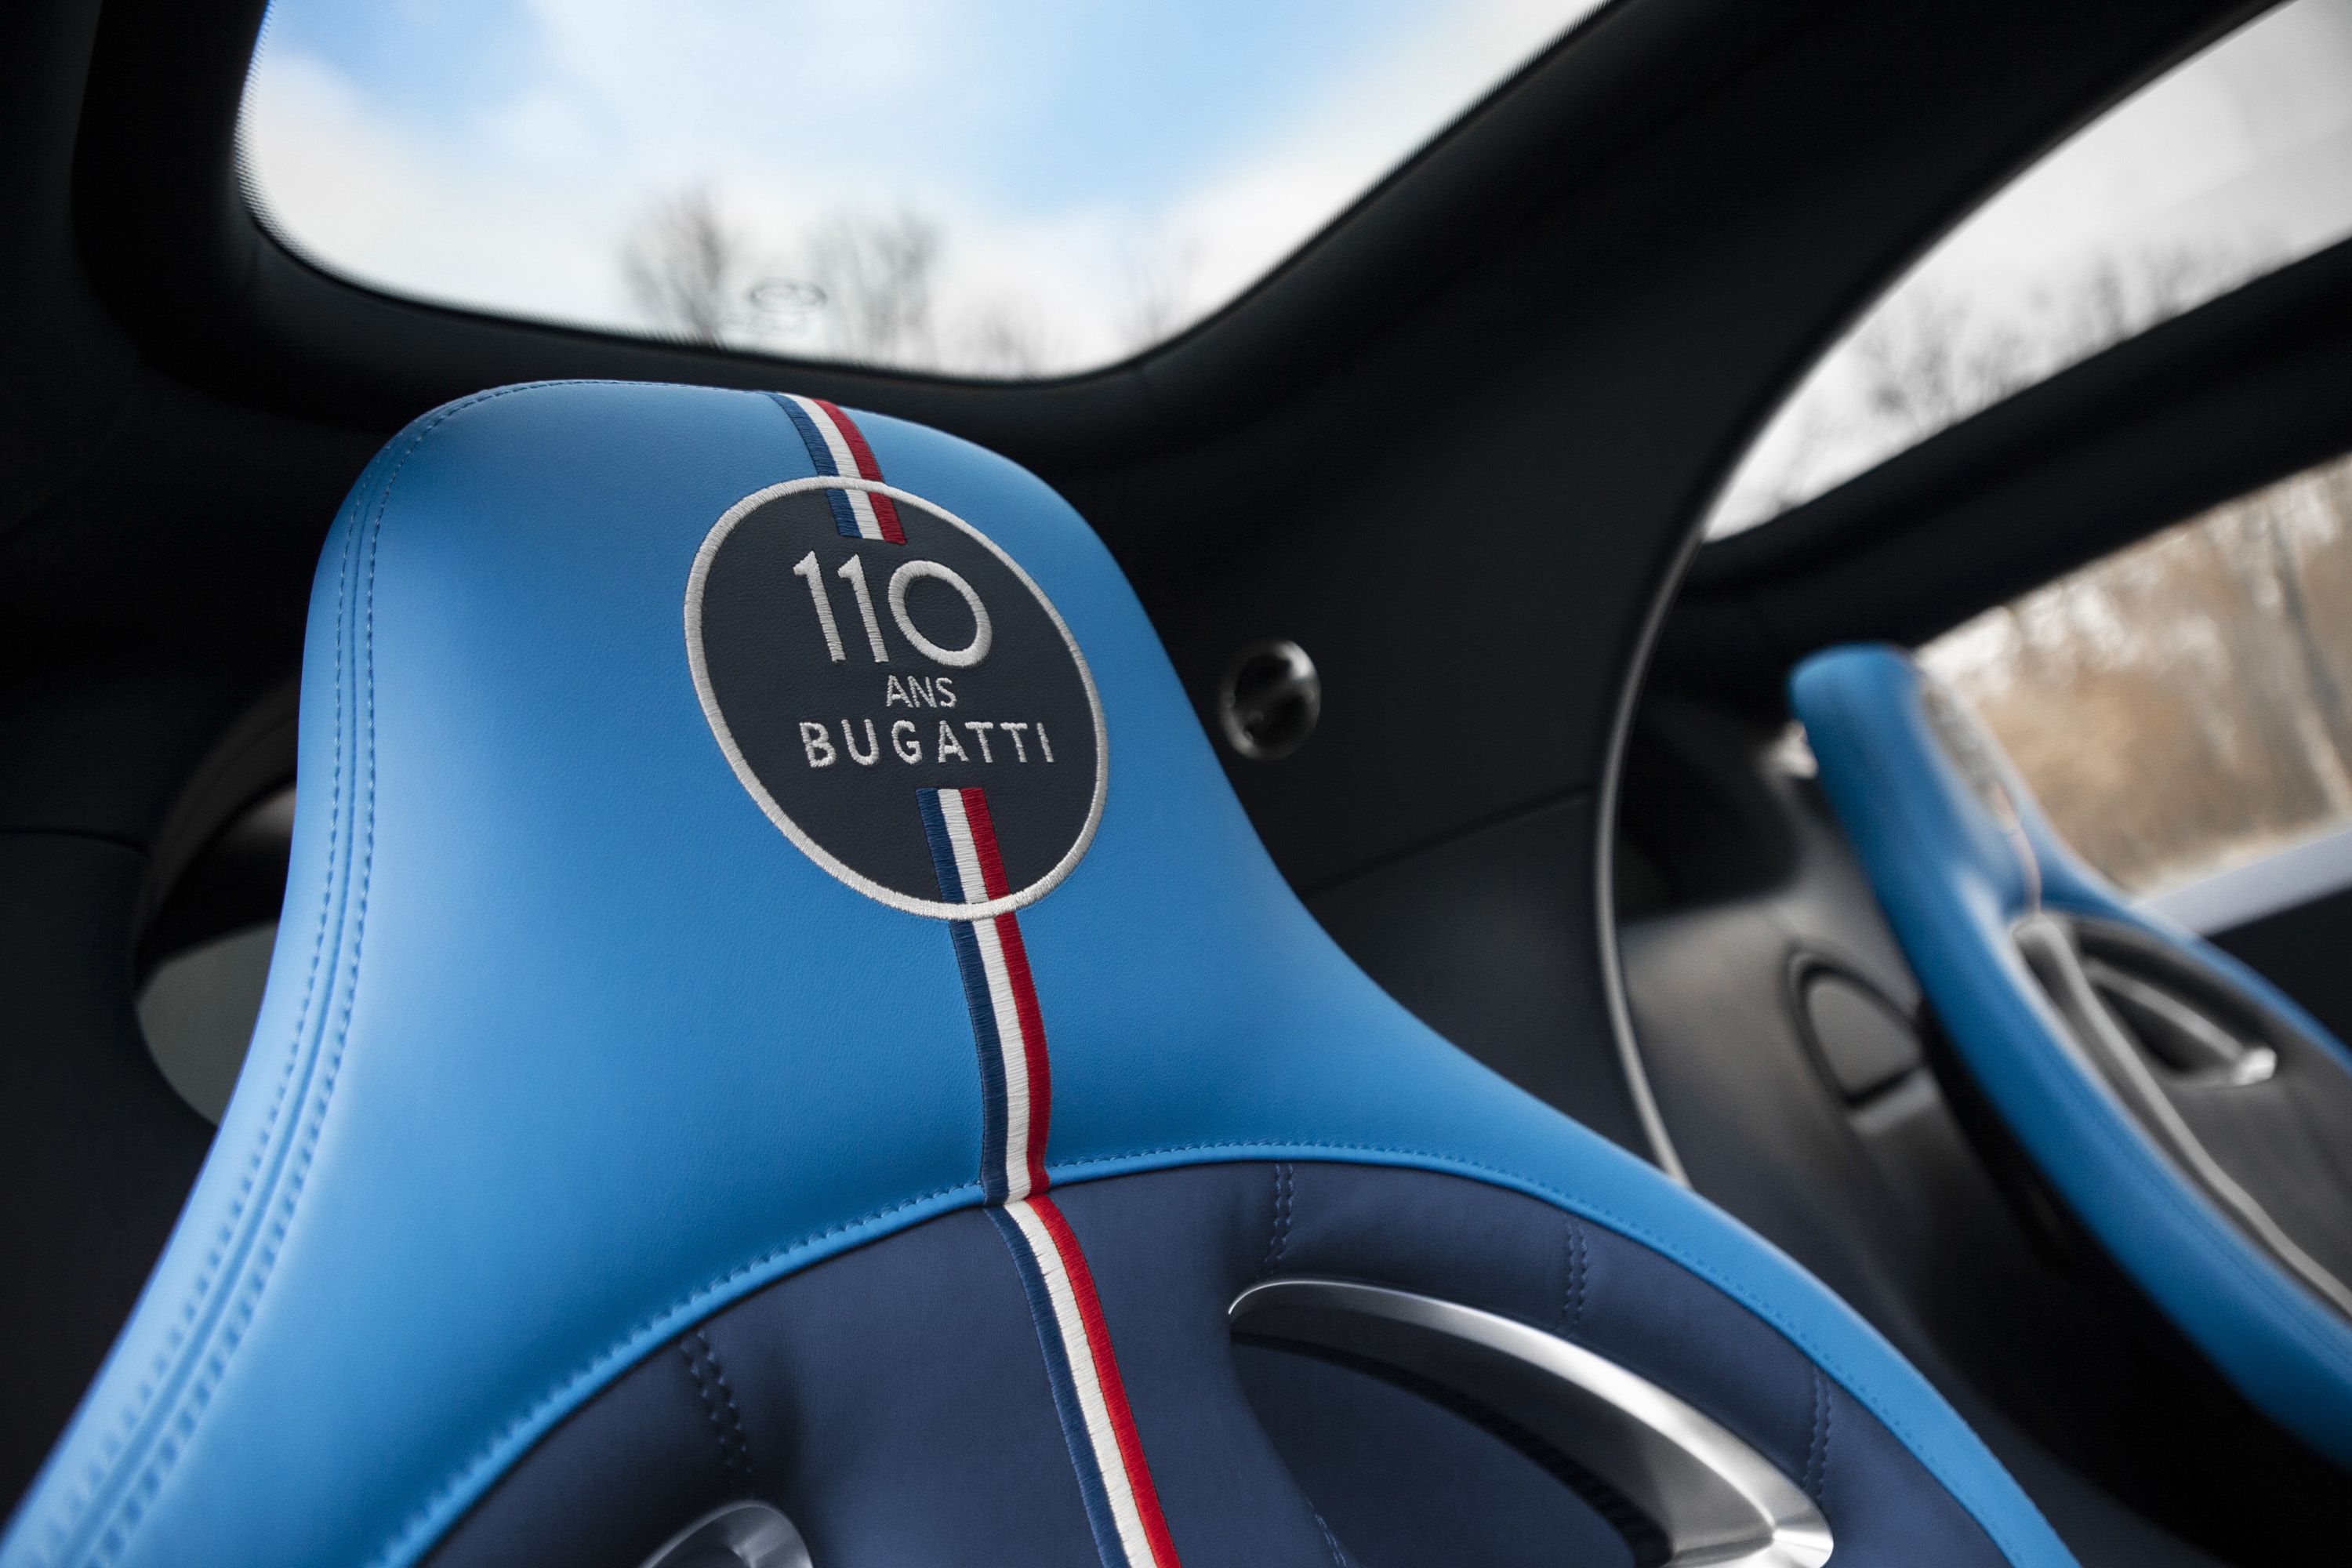 2019 Bugatti Chiron Sport 110 ans Bugatti Interior Seats Wallpapers (10)